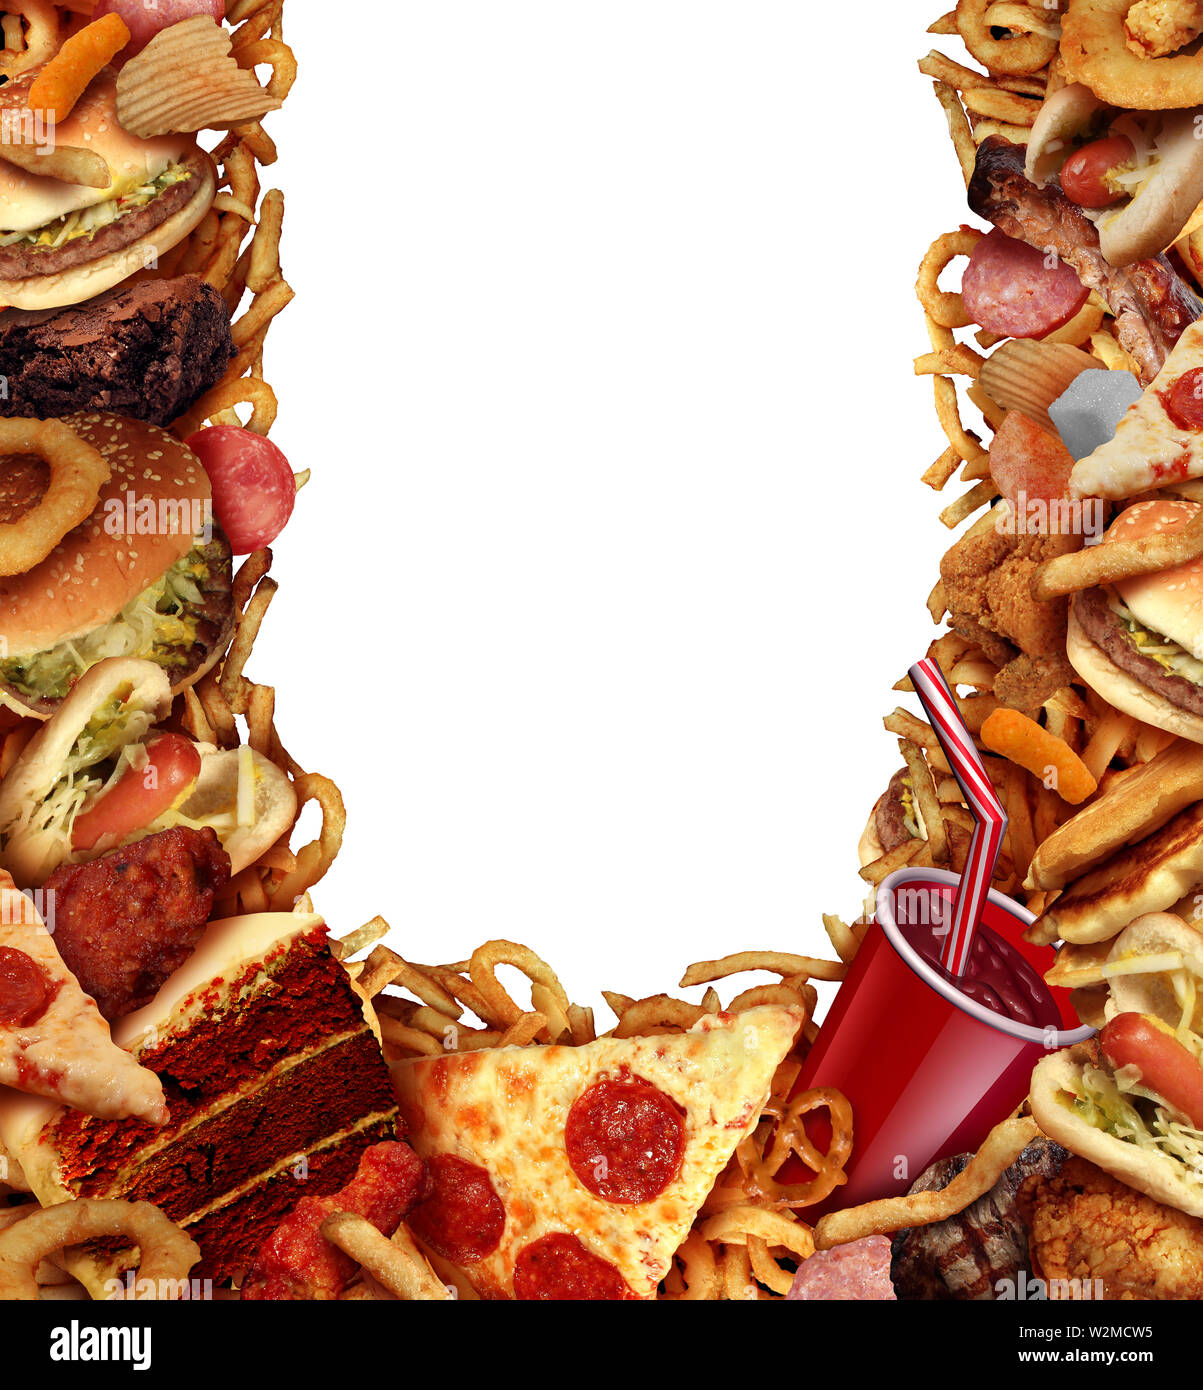 Junk food Hintergrund frame-Konzept mit fettigen gebratenen Restaurant nehmen Sie so Zwiebelringe Burger und Hot Dogs mit Pizza als Symbol der Diät Versuchung. Stockfoto